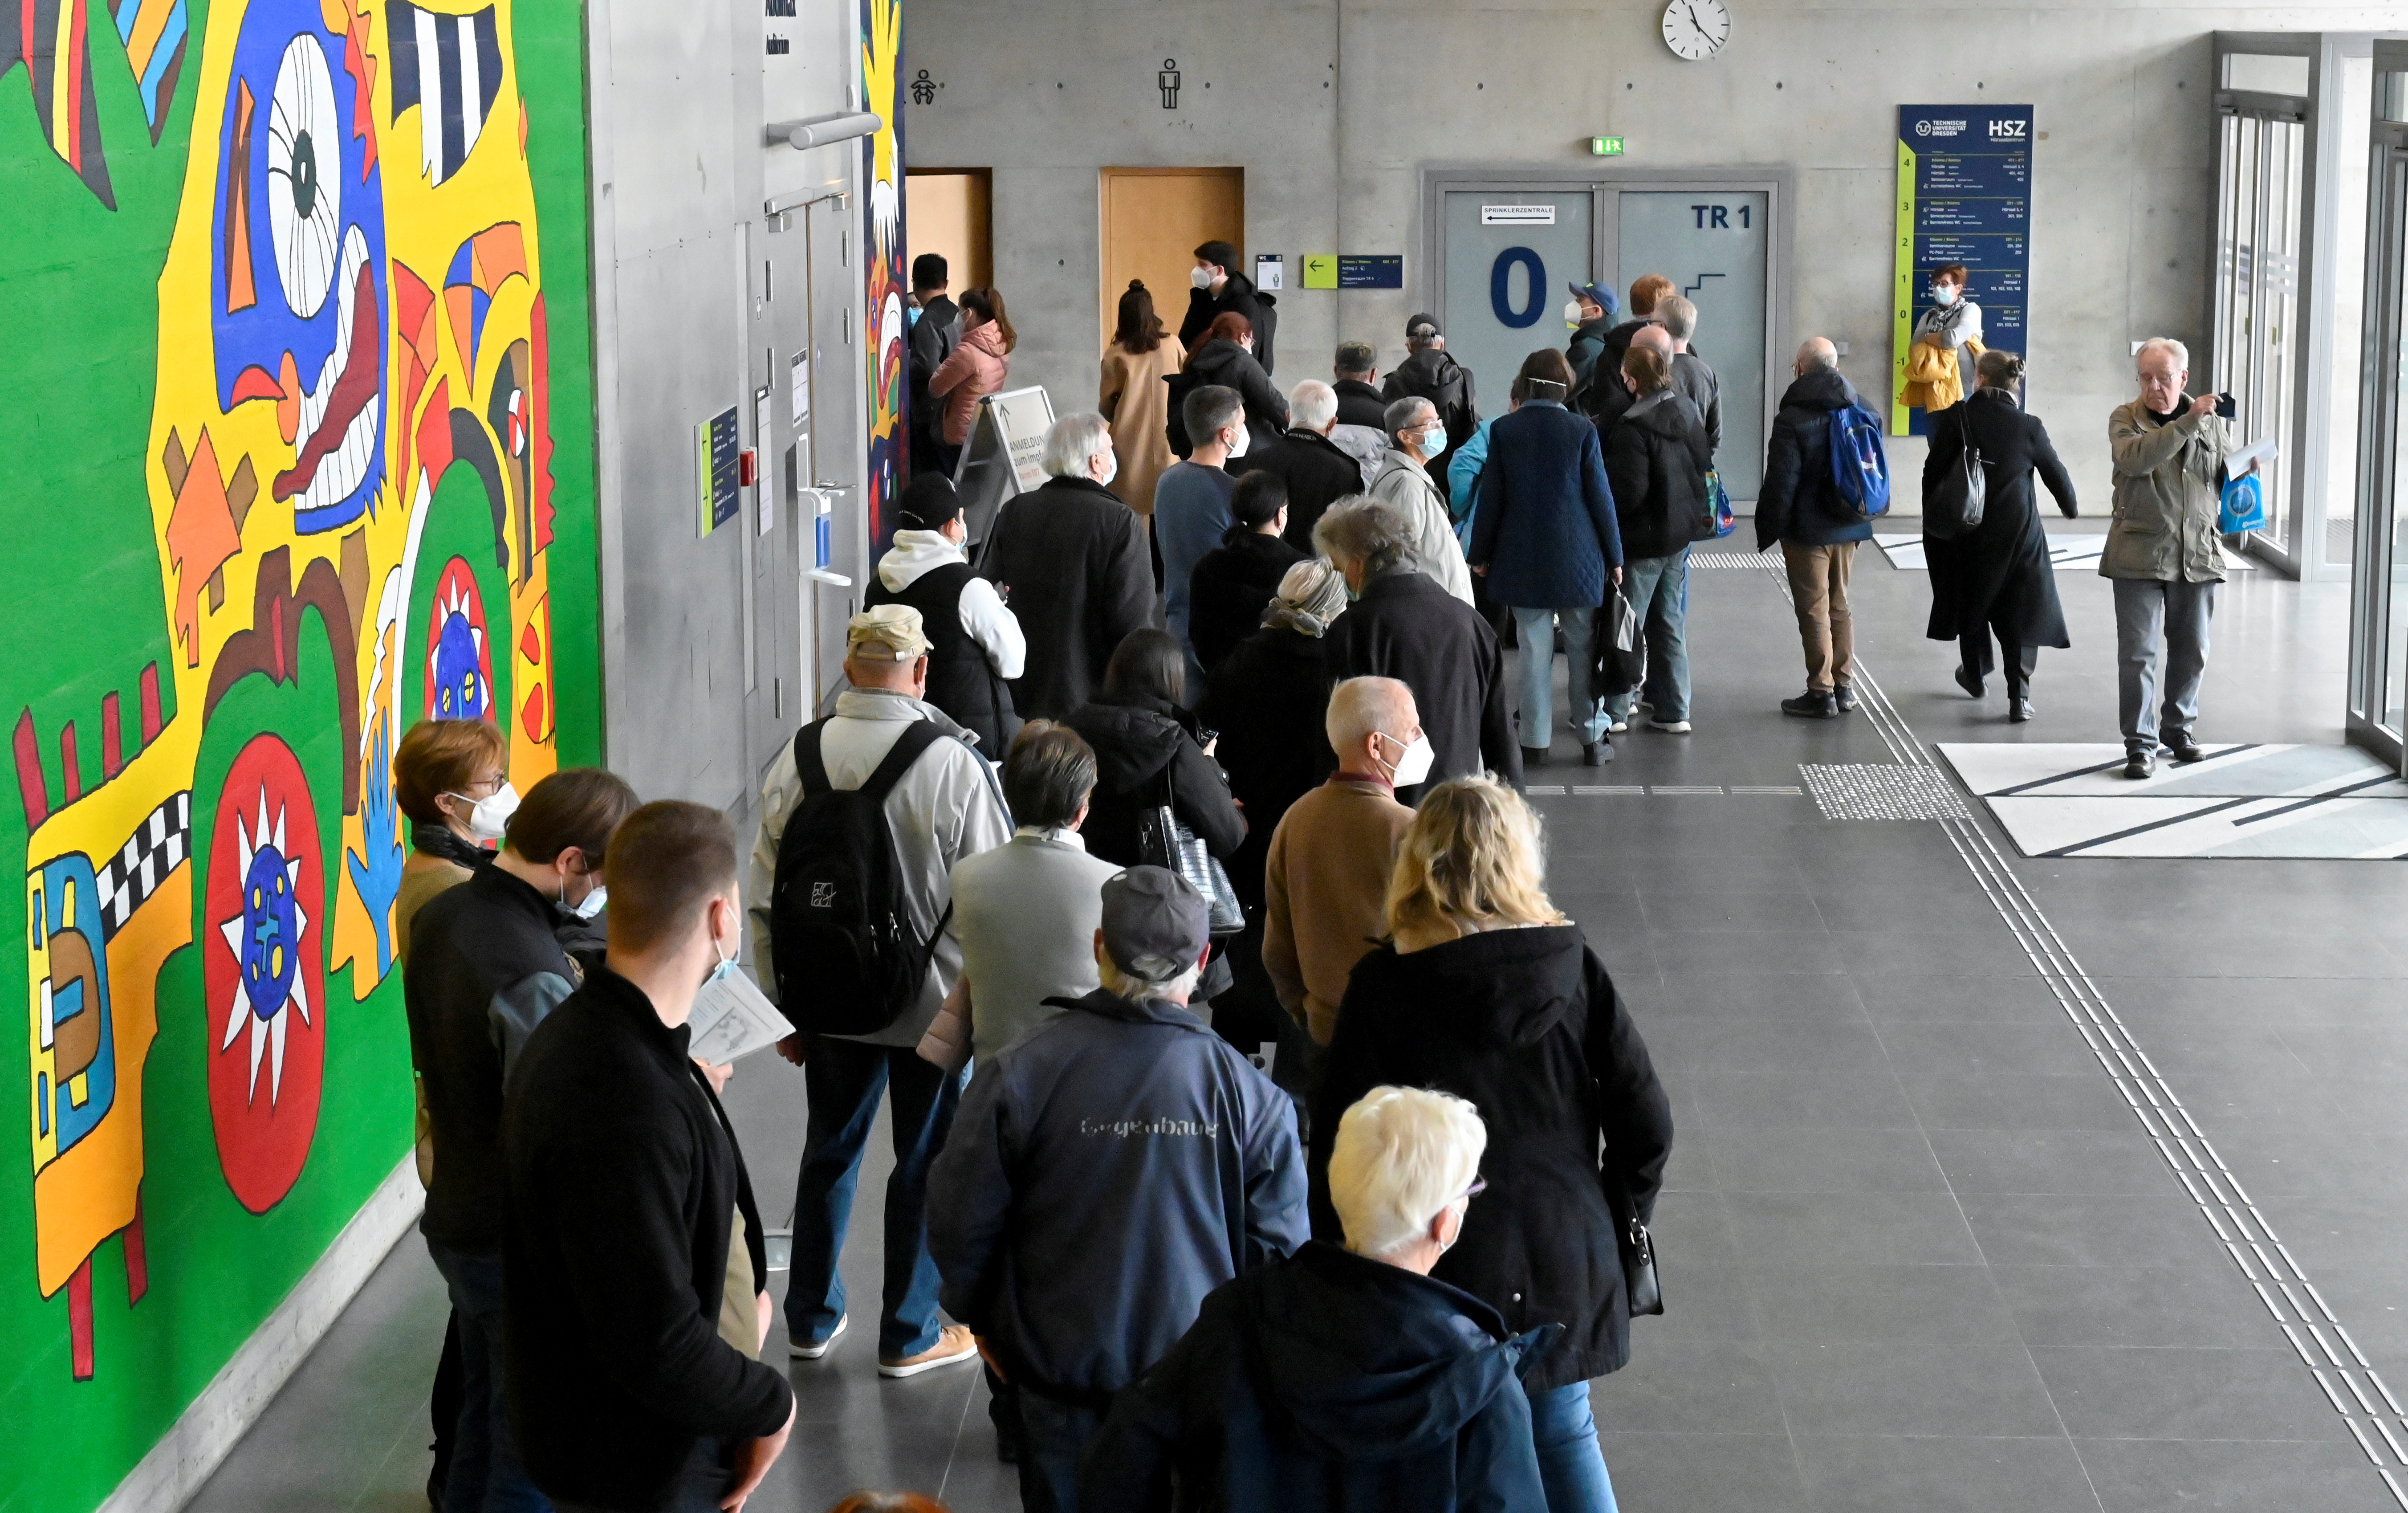 Njerëzit qëndrojnë në radhë për vaksinim në një qendër të përkohshme vaksinimi brenda ndërtesës së kampusit të universitetit Technische Universitaet në Dresden, Gjermani, 8 nëntor 2021. REUTERS/Matthias Rietschel